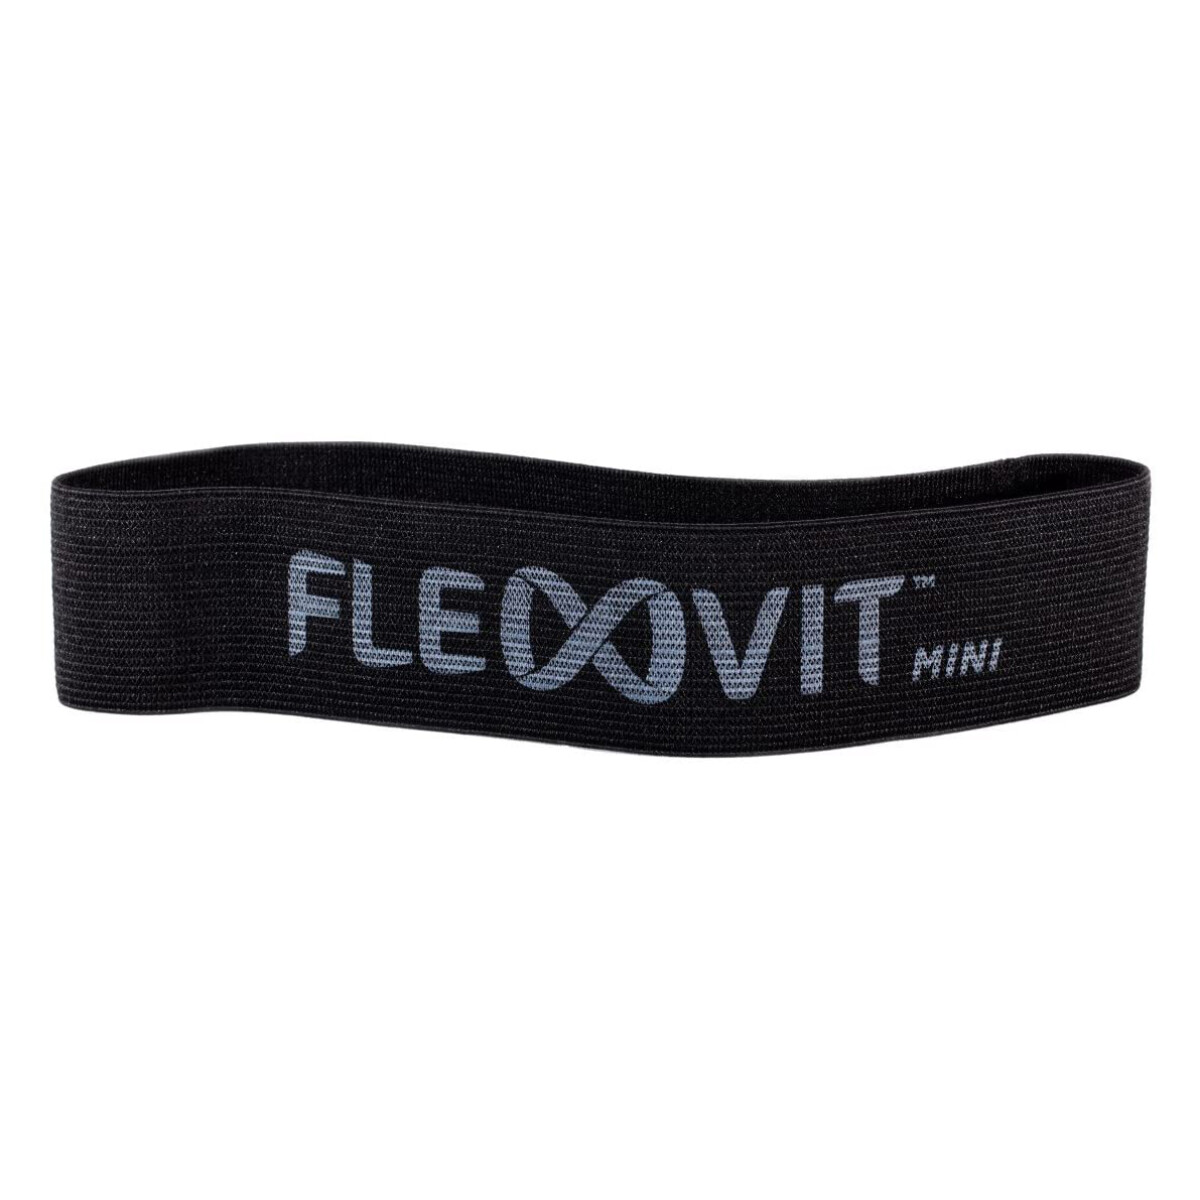 Banda Elástica Flexvit Mini Band - N°6 Negro 